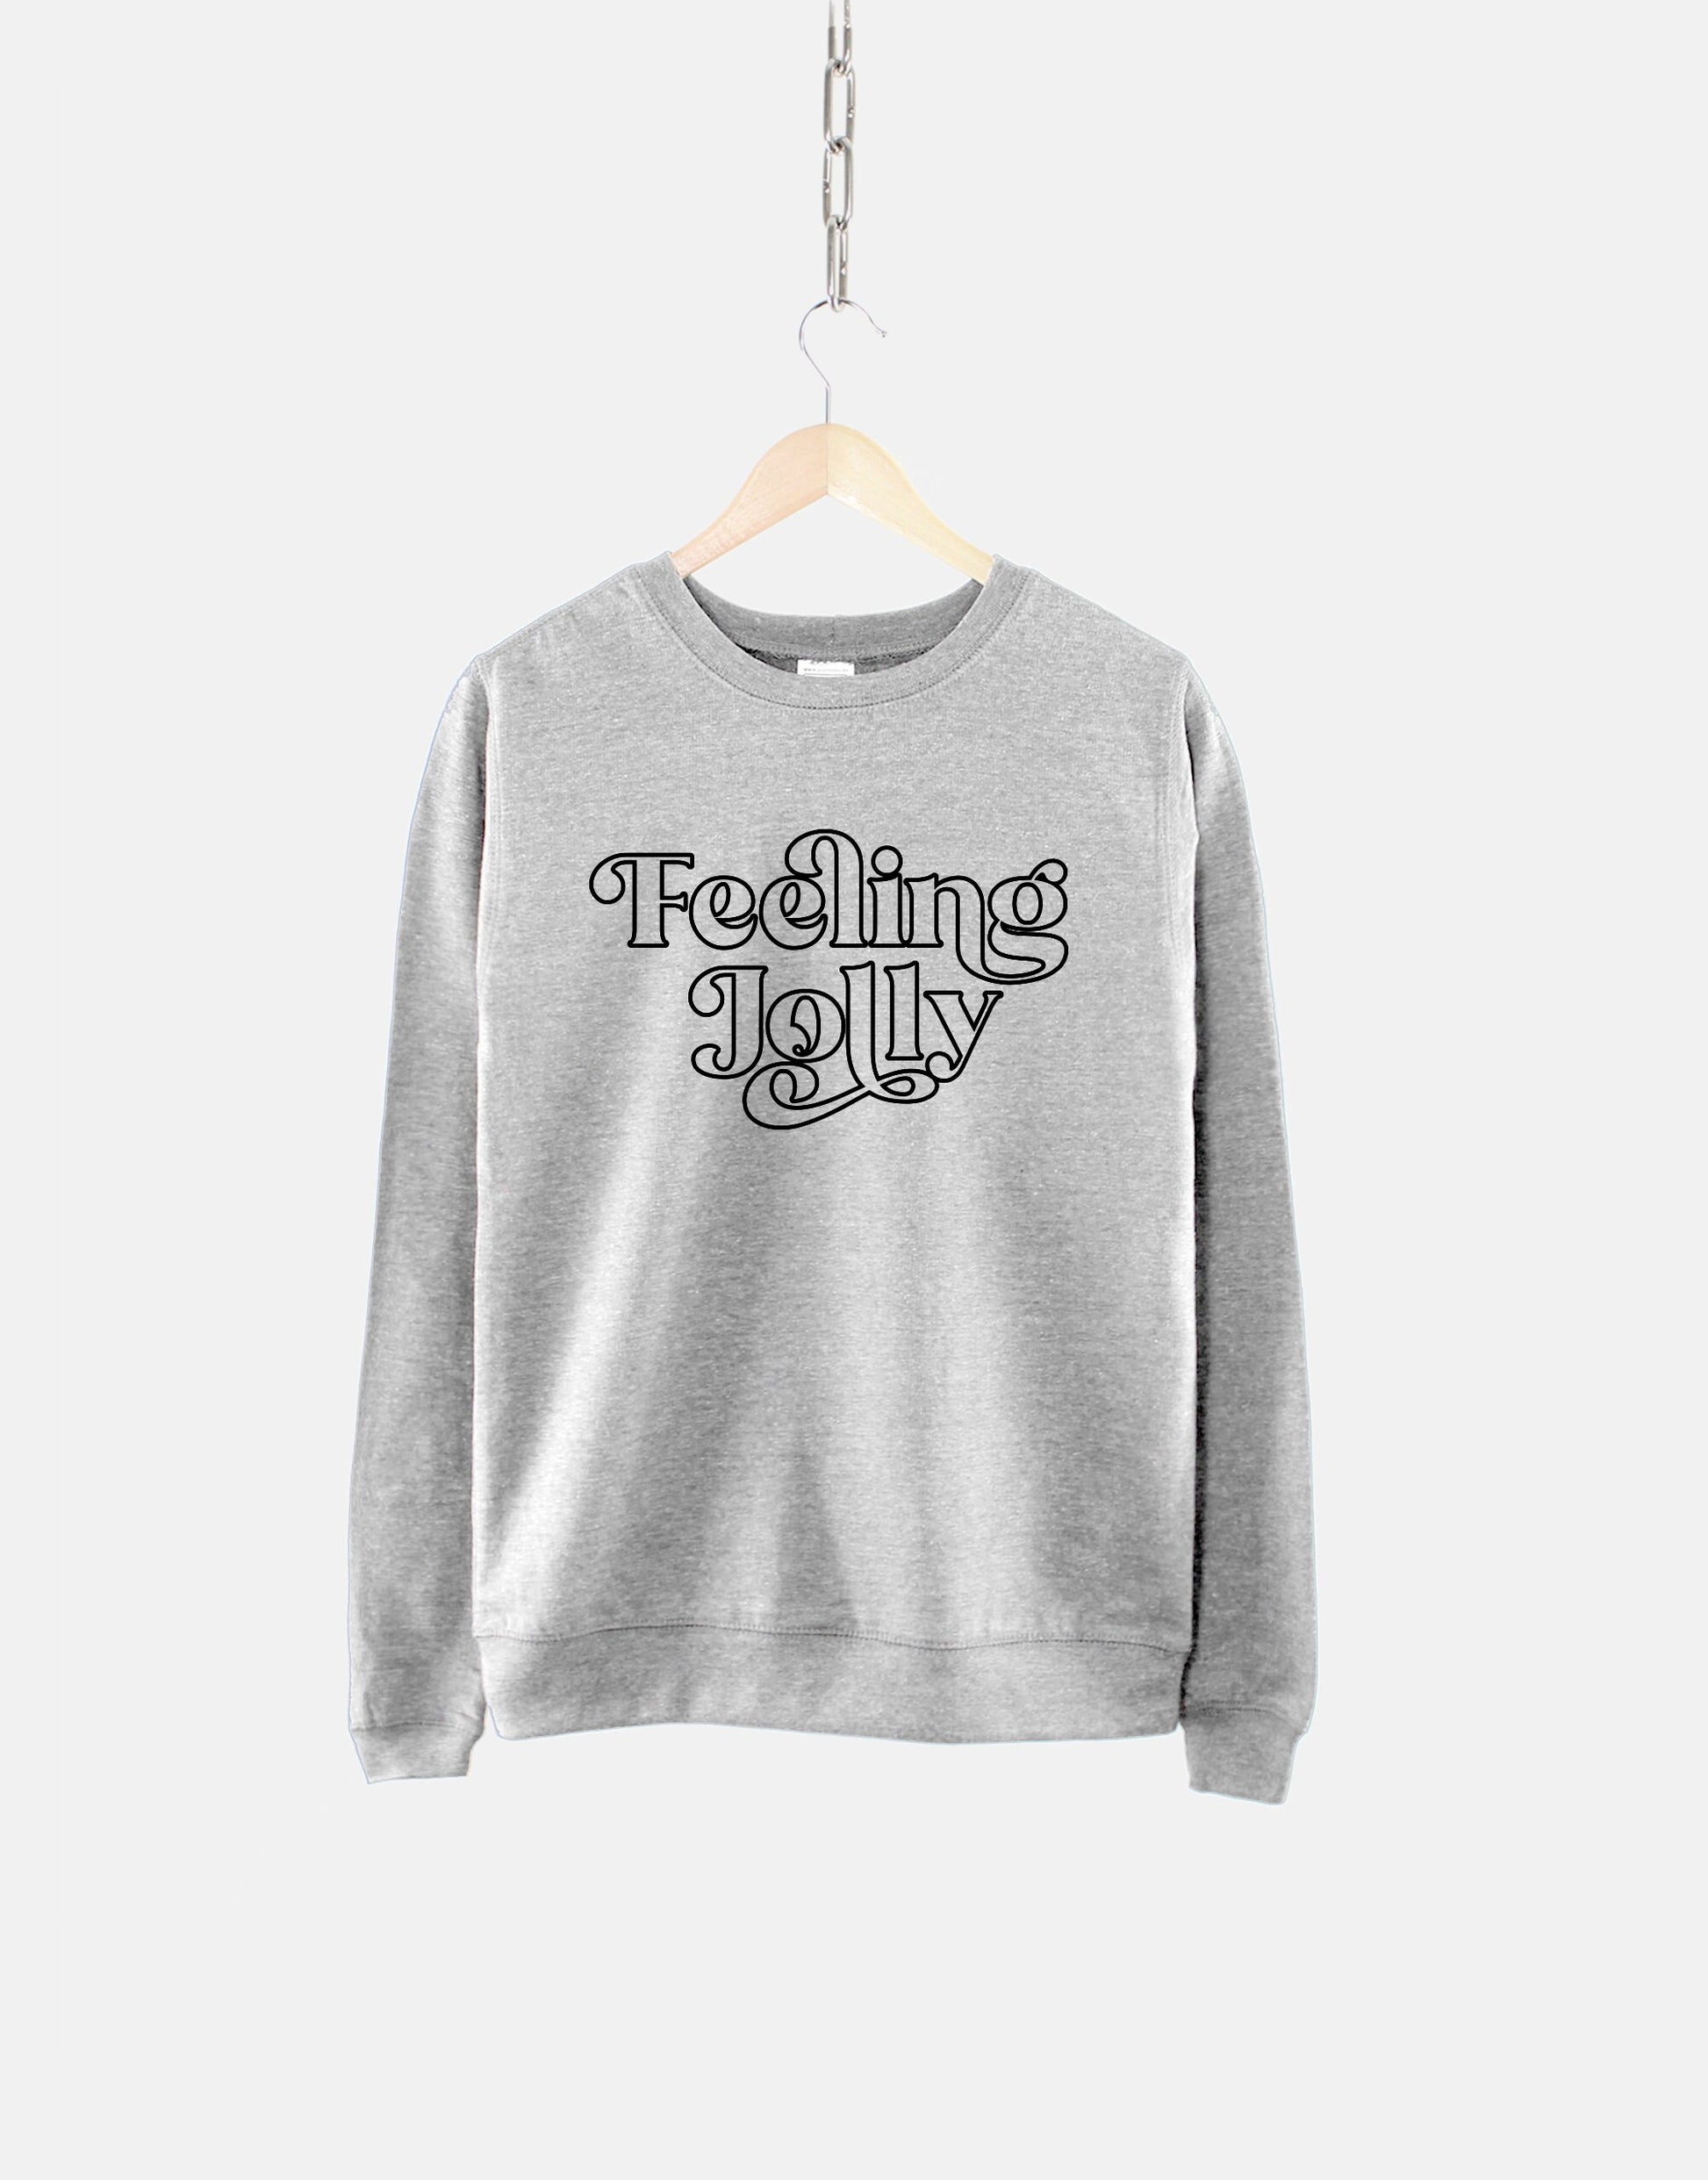 Feeling Jolly Christmas Sweatshirt - Retro Christmas Sweatshirt - Chri –  Qurious Shop